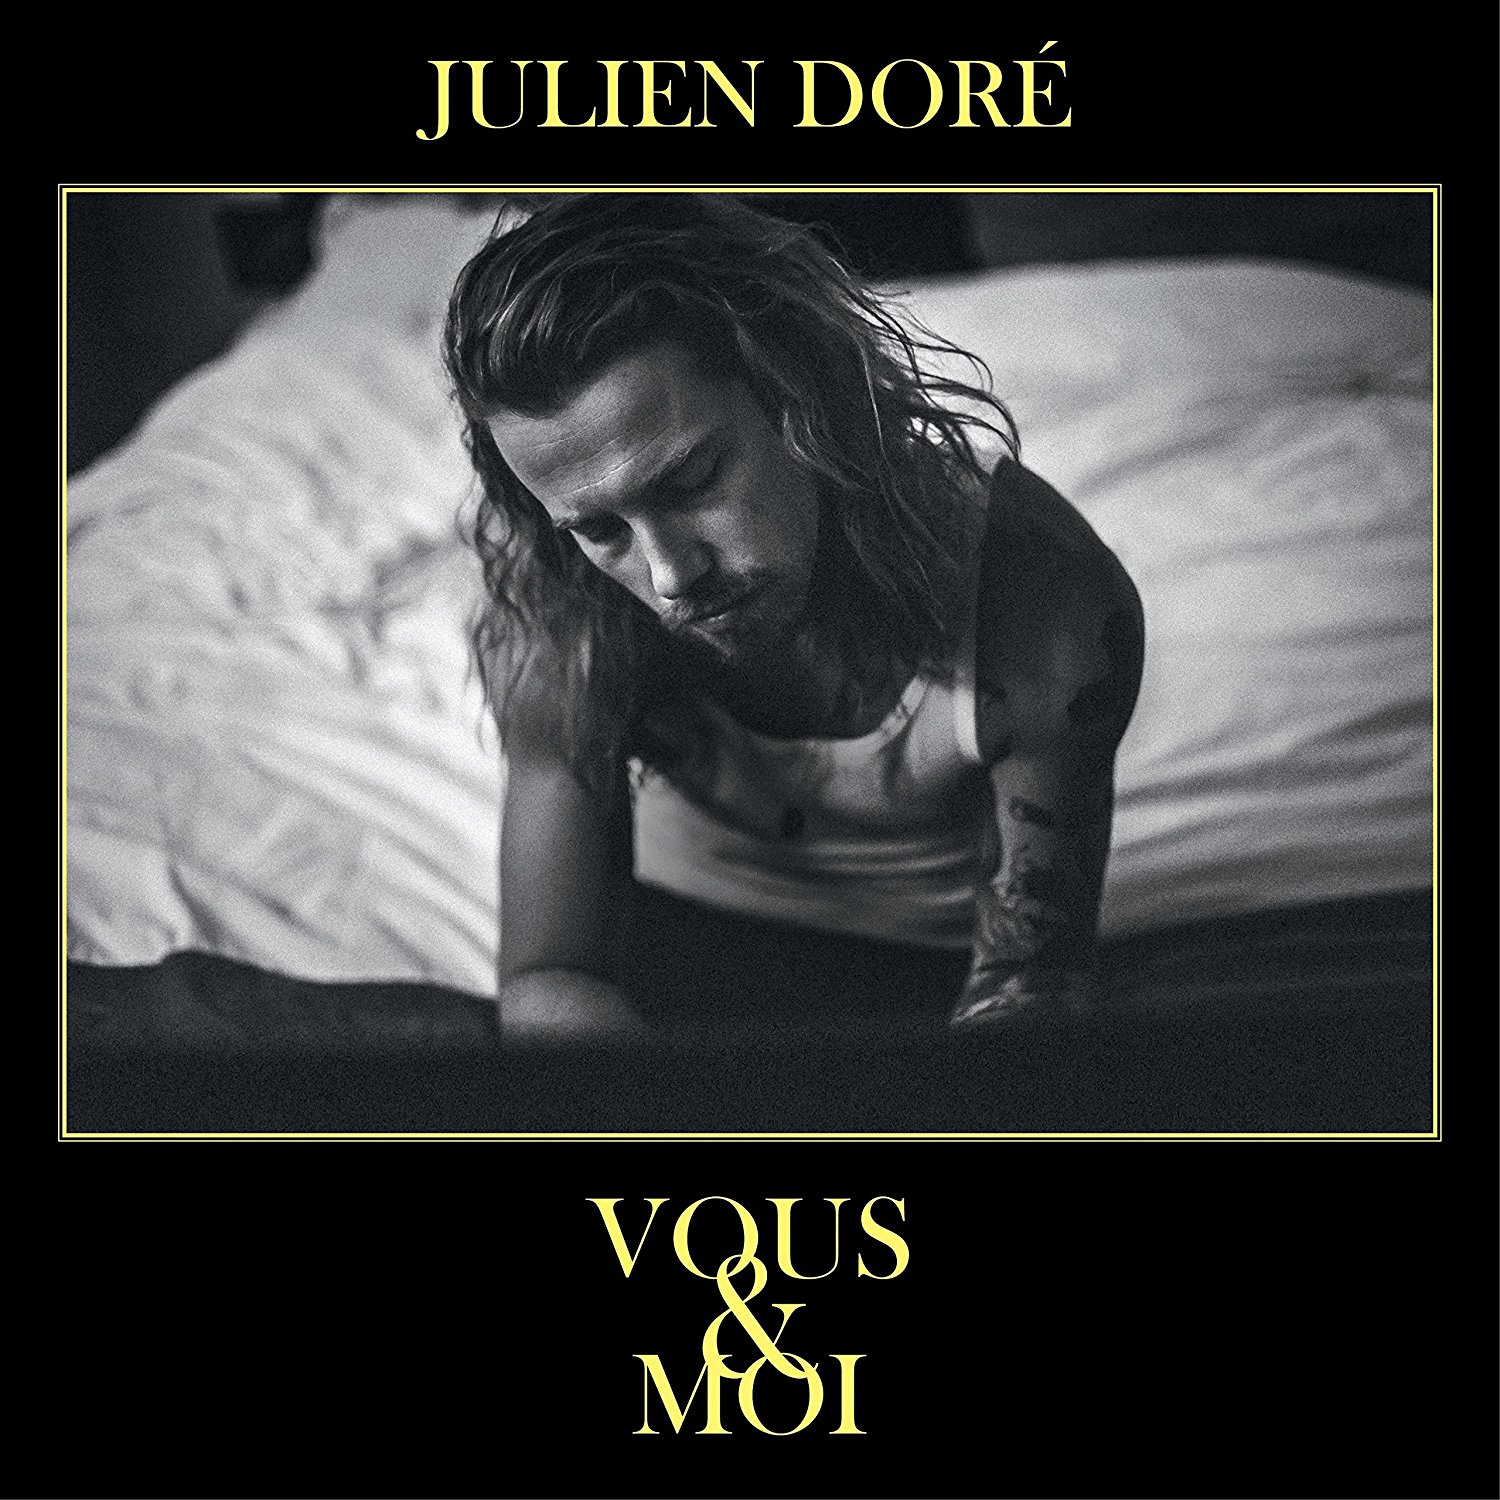 Julien Dore - Vous & Moi (pochette jaune ou noire, envoi au hasard)